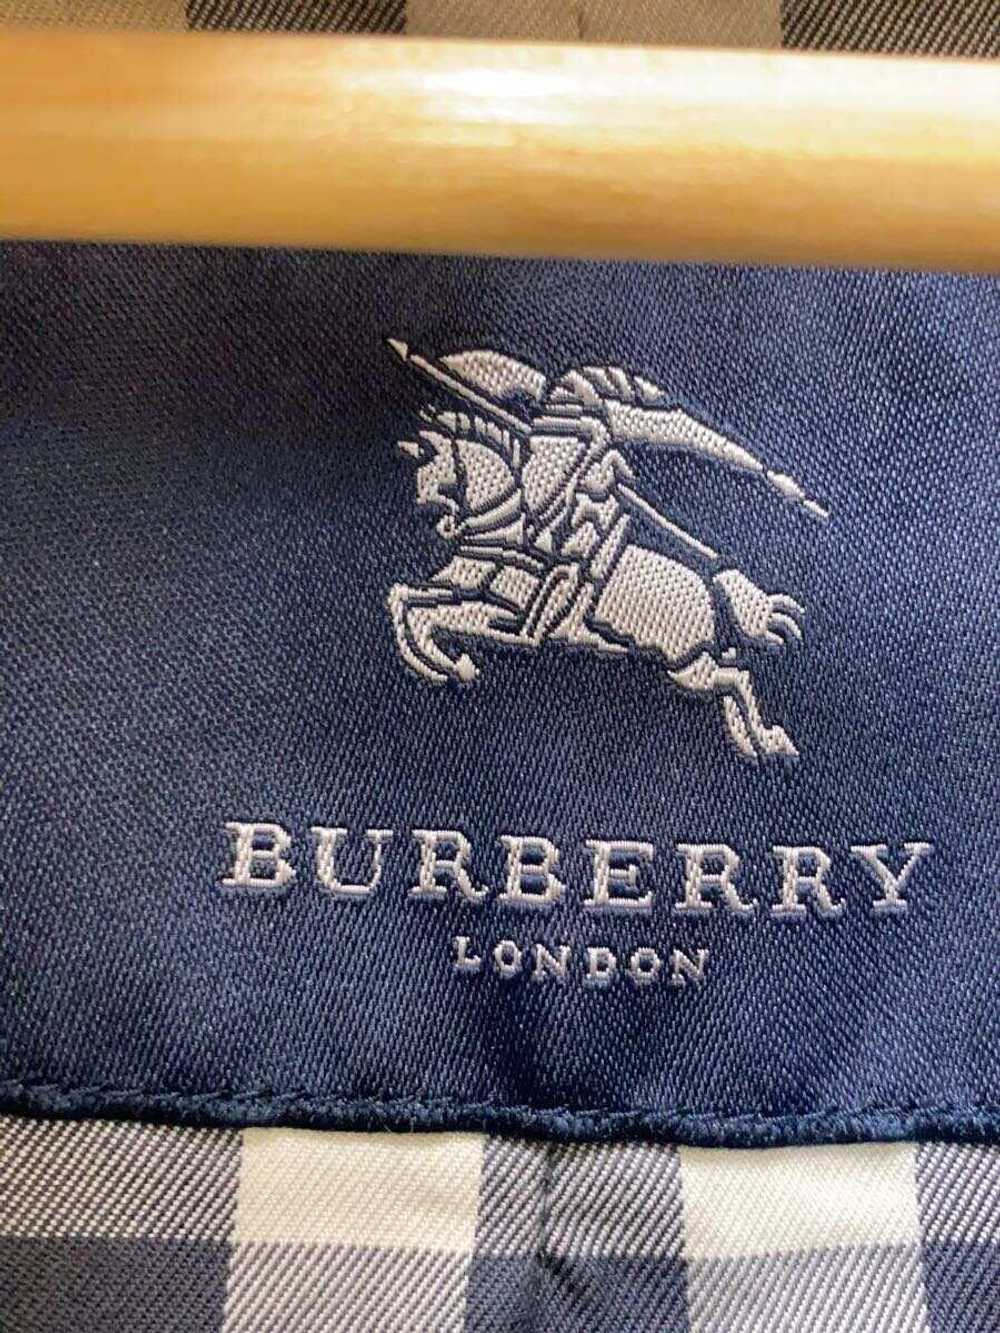 Burberry London Trench Coat 42 Cotton Blk Plain M… - image 3